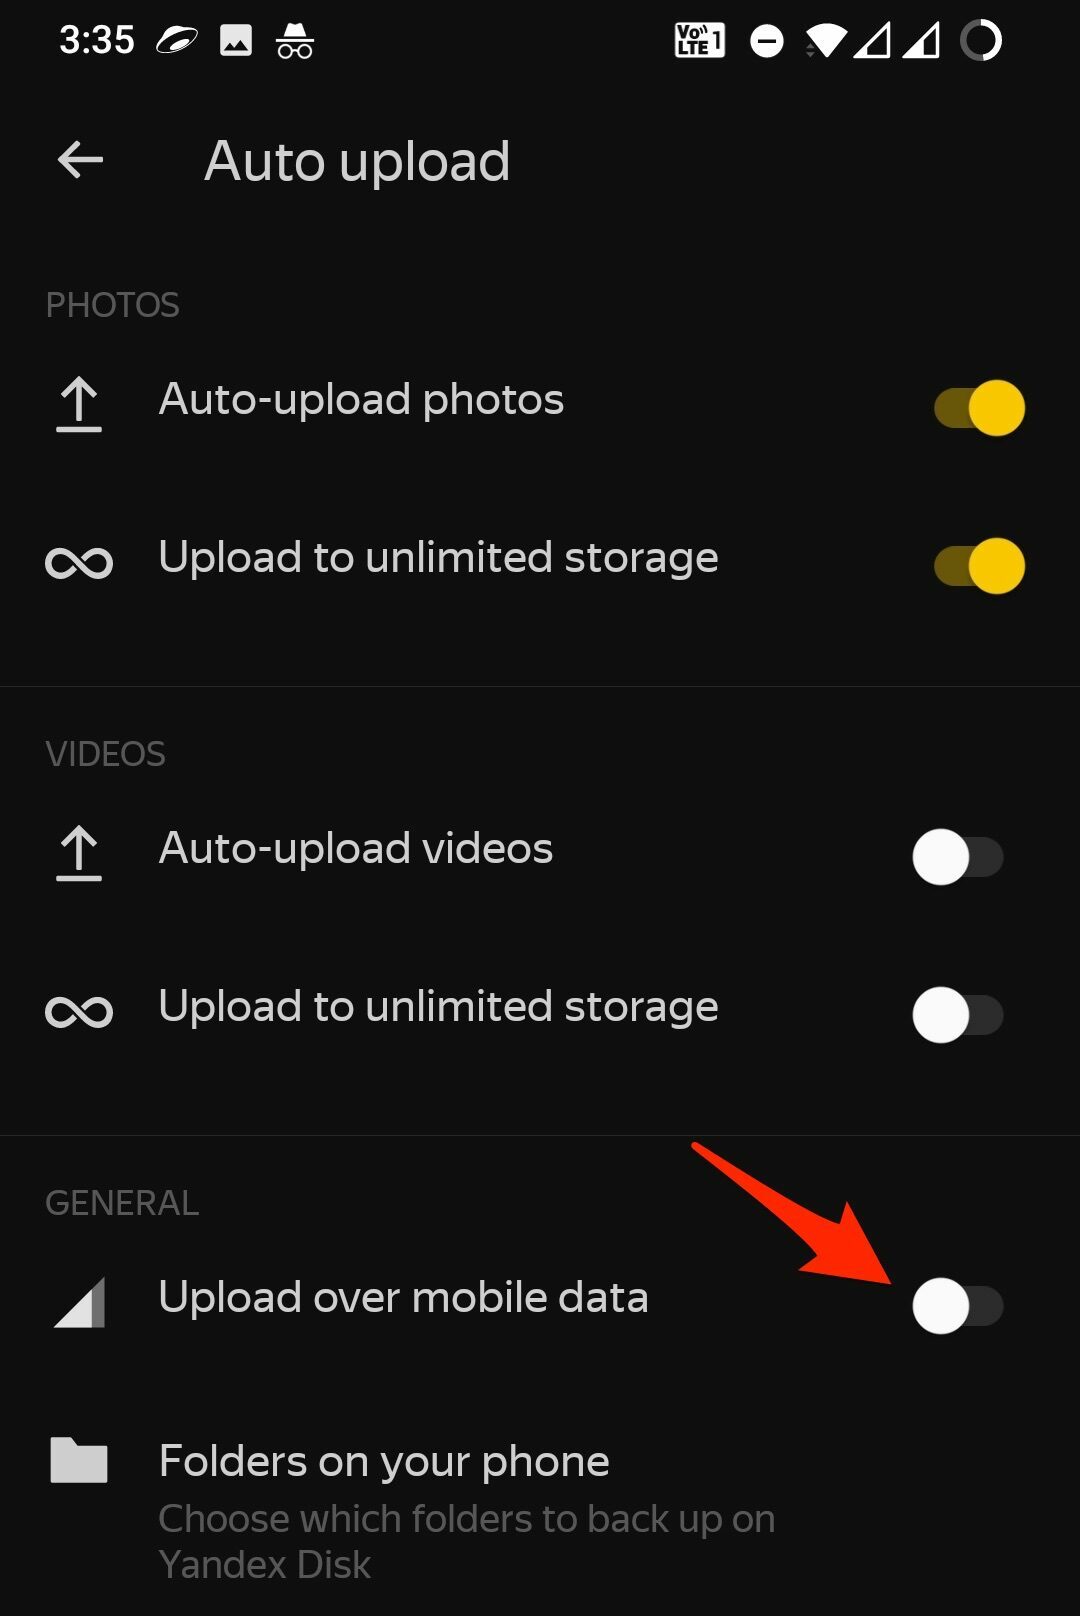 Upload_over_mobile_data